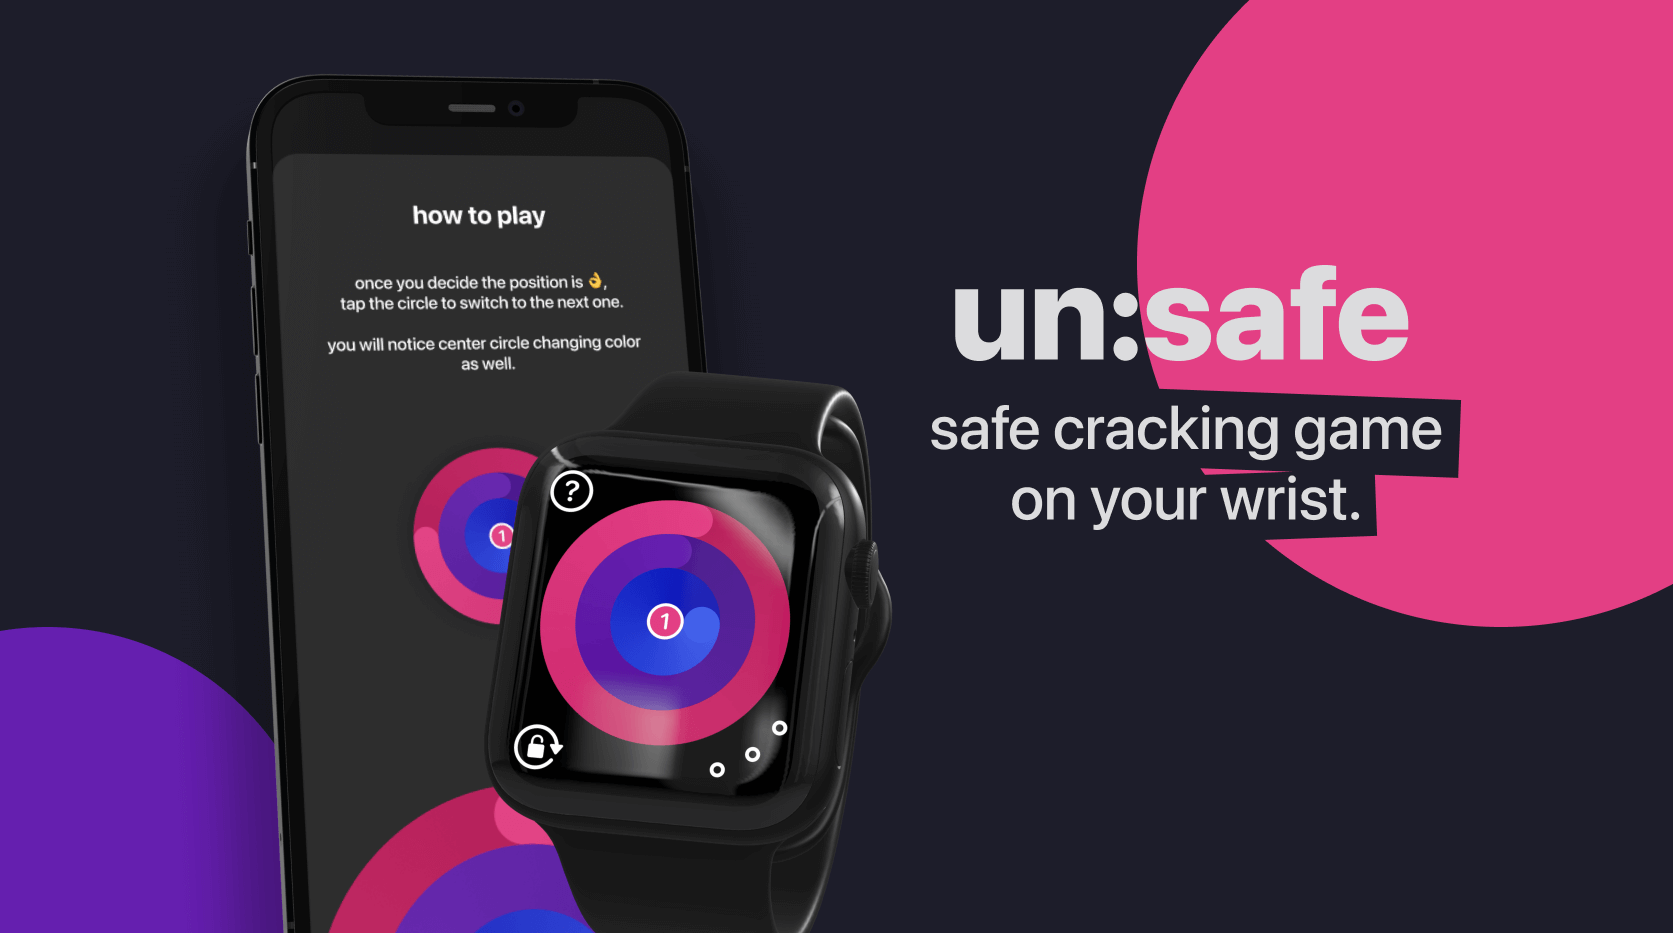 Нашёл гениальную игру un:safe для Apple Watch. Залипаю в метро так, что пропустил станцию